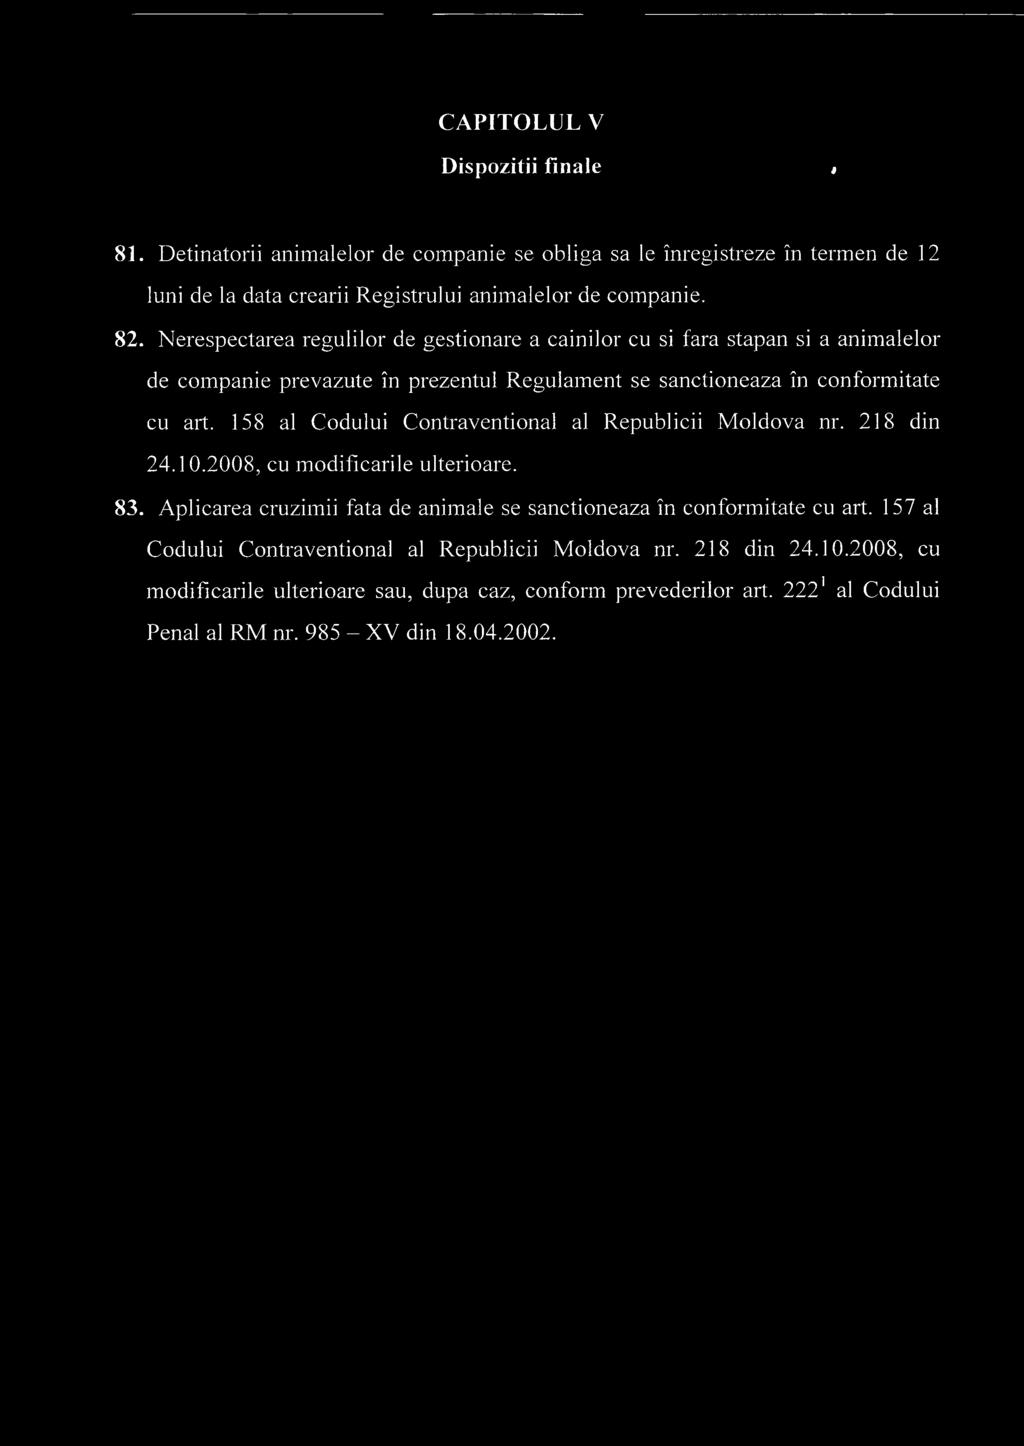 158 al Codului Contraventional al Republicii Moldova nr. 218 din 24.10.2008, cu modificarile ulterioare. 83. Aplicarea cruzimii fata de animale se sanctioneaza in conformitate cu art.